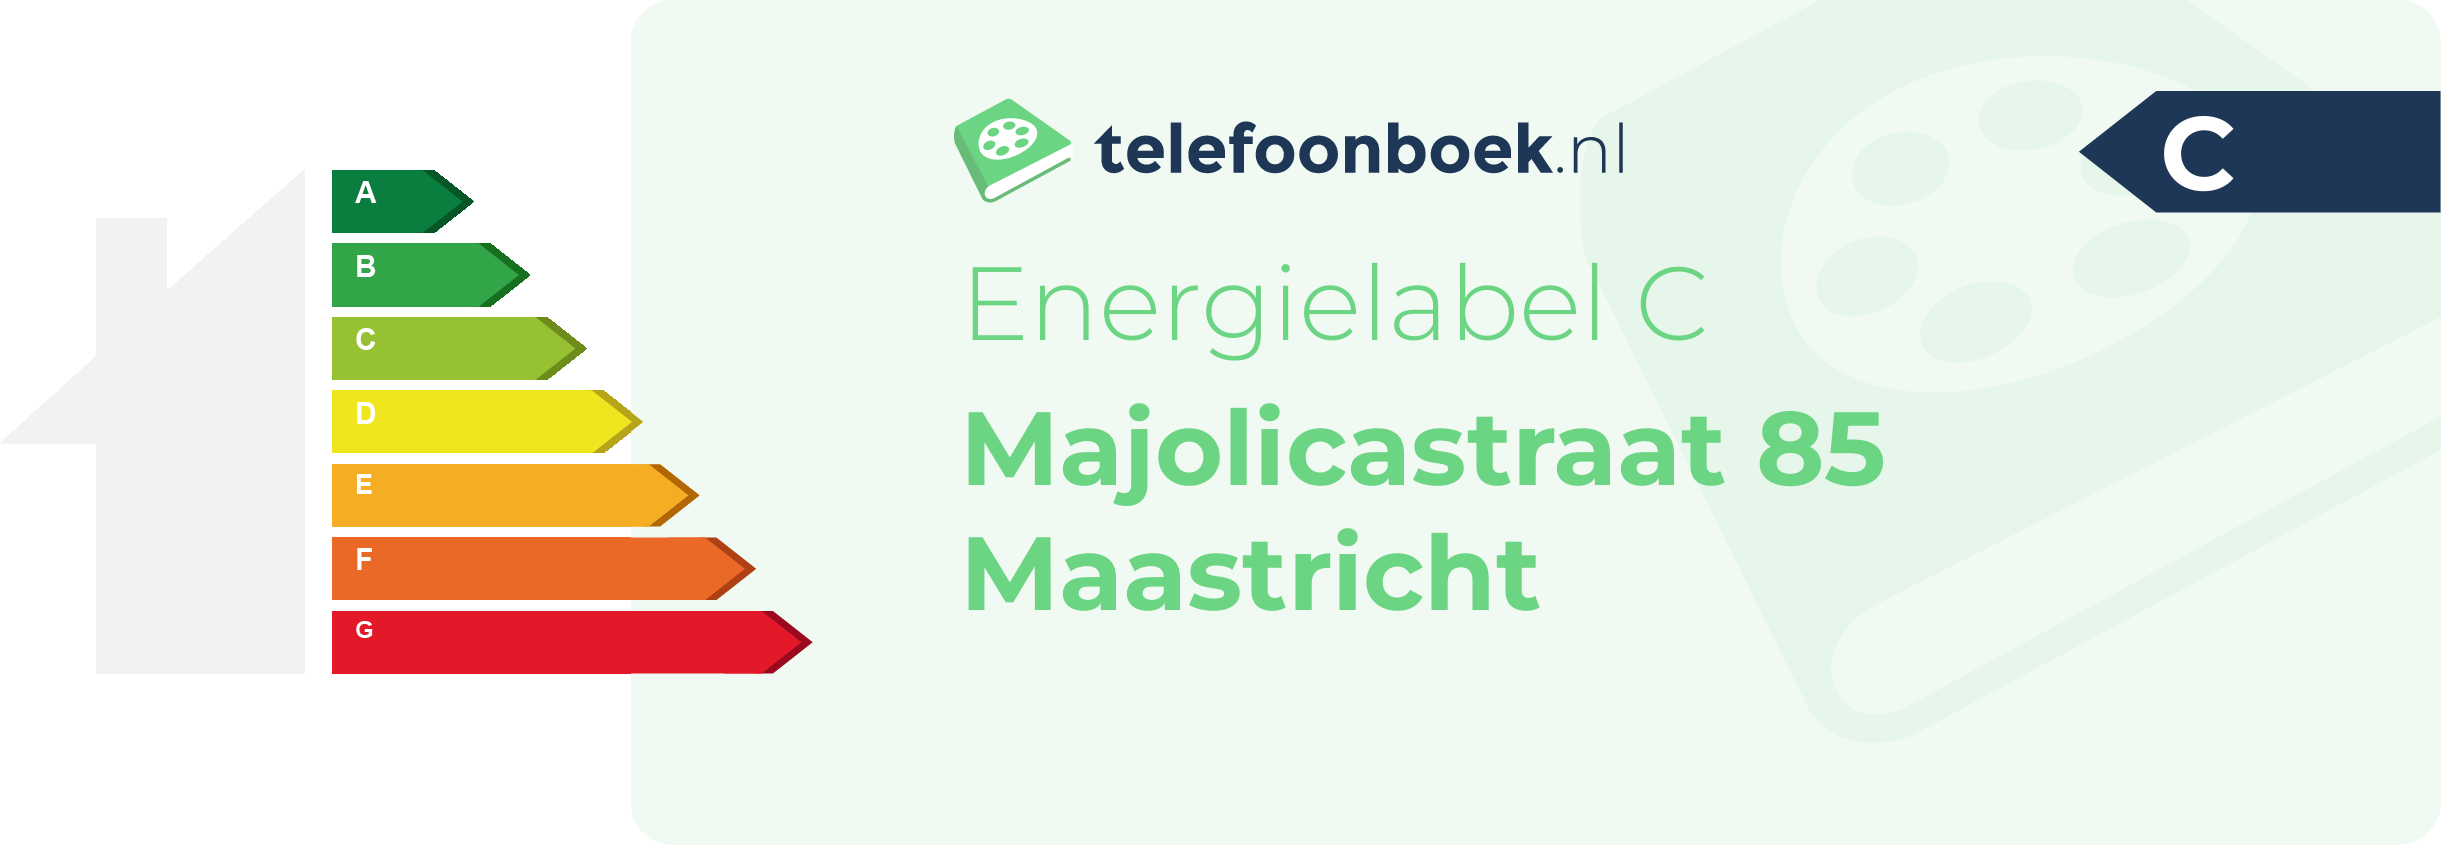 Energielabel Majolicastraat 85 Maastricht